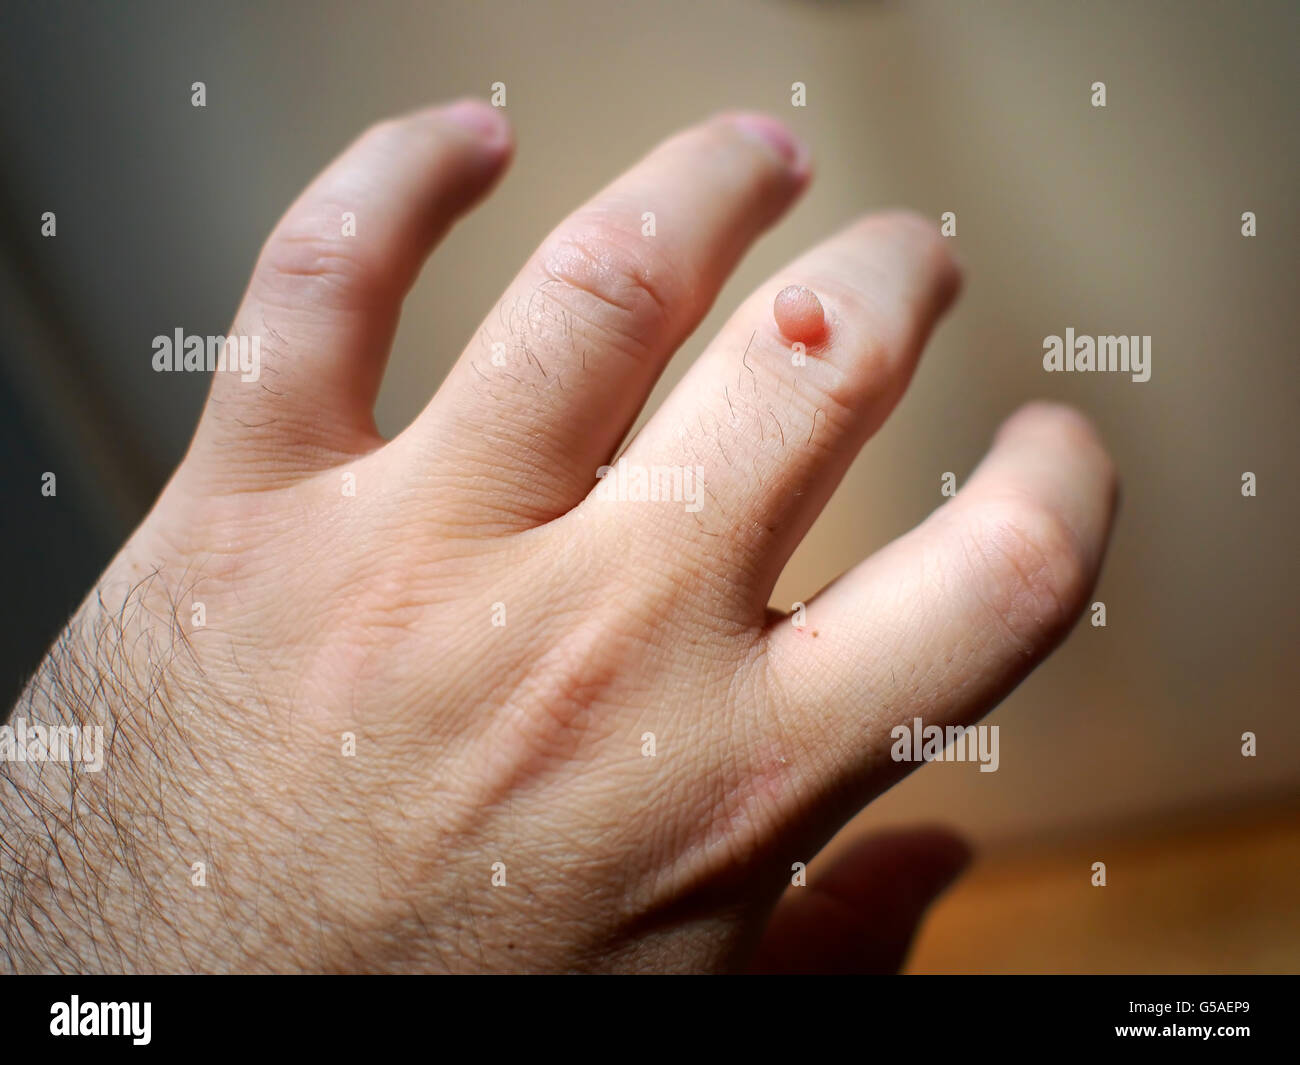 Verruca sul dito a mano. Foto Stock